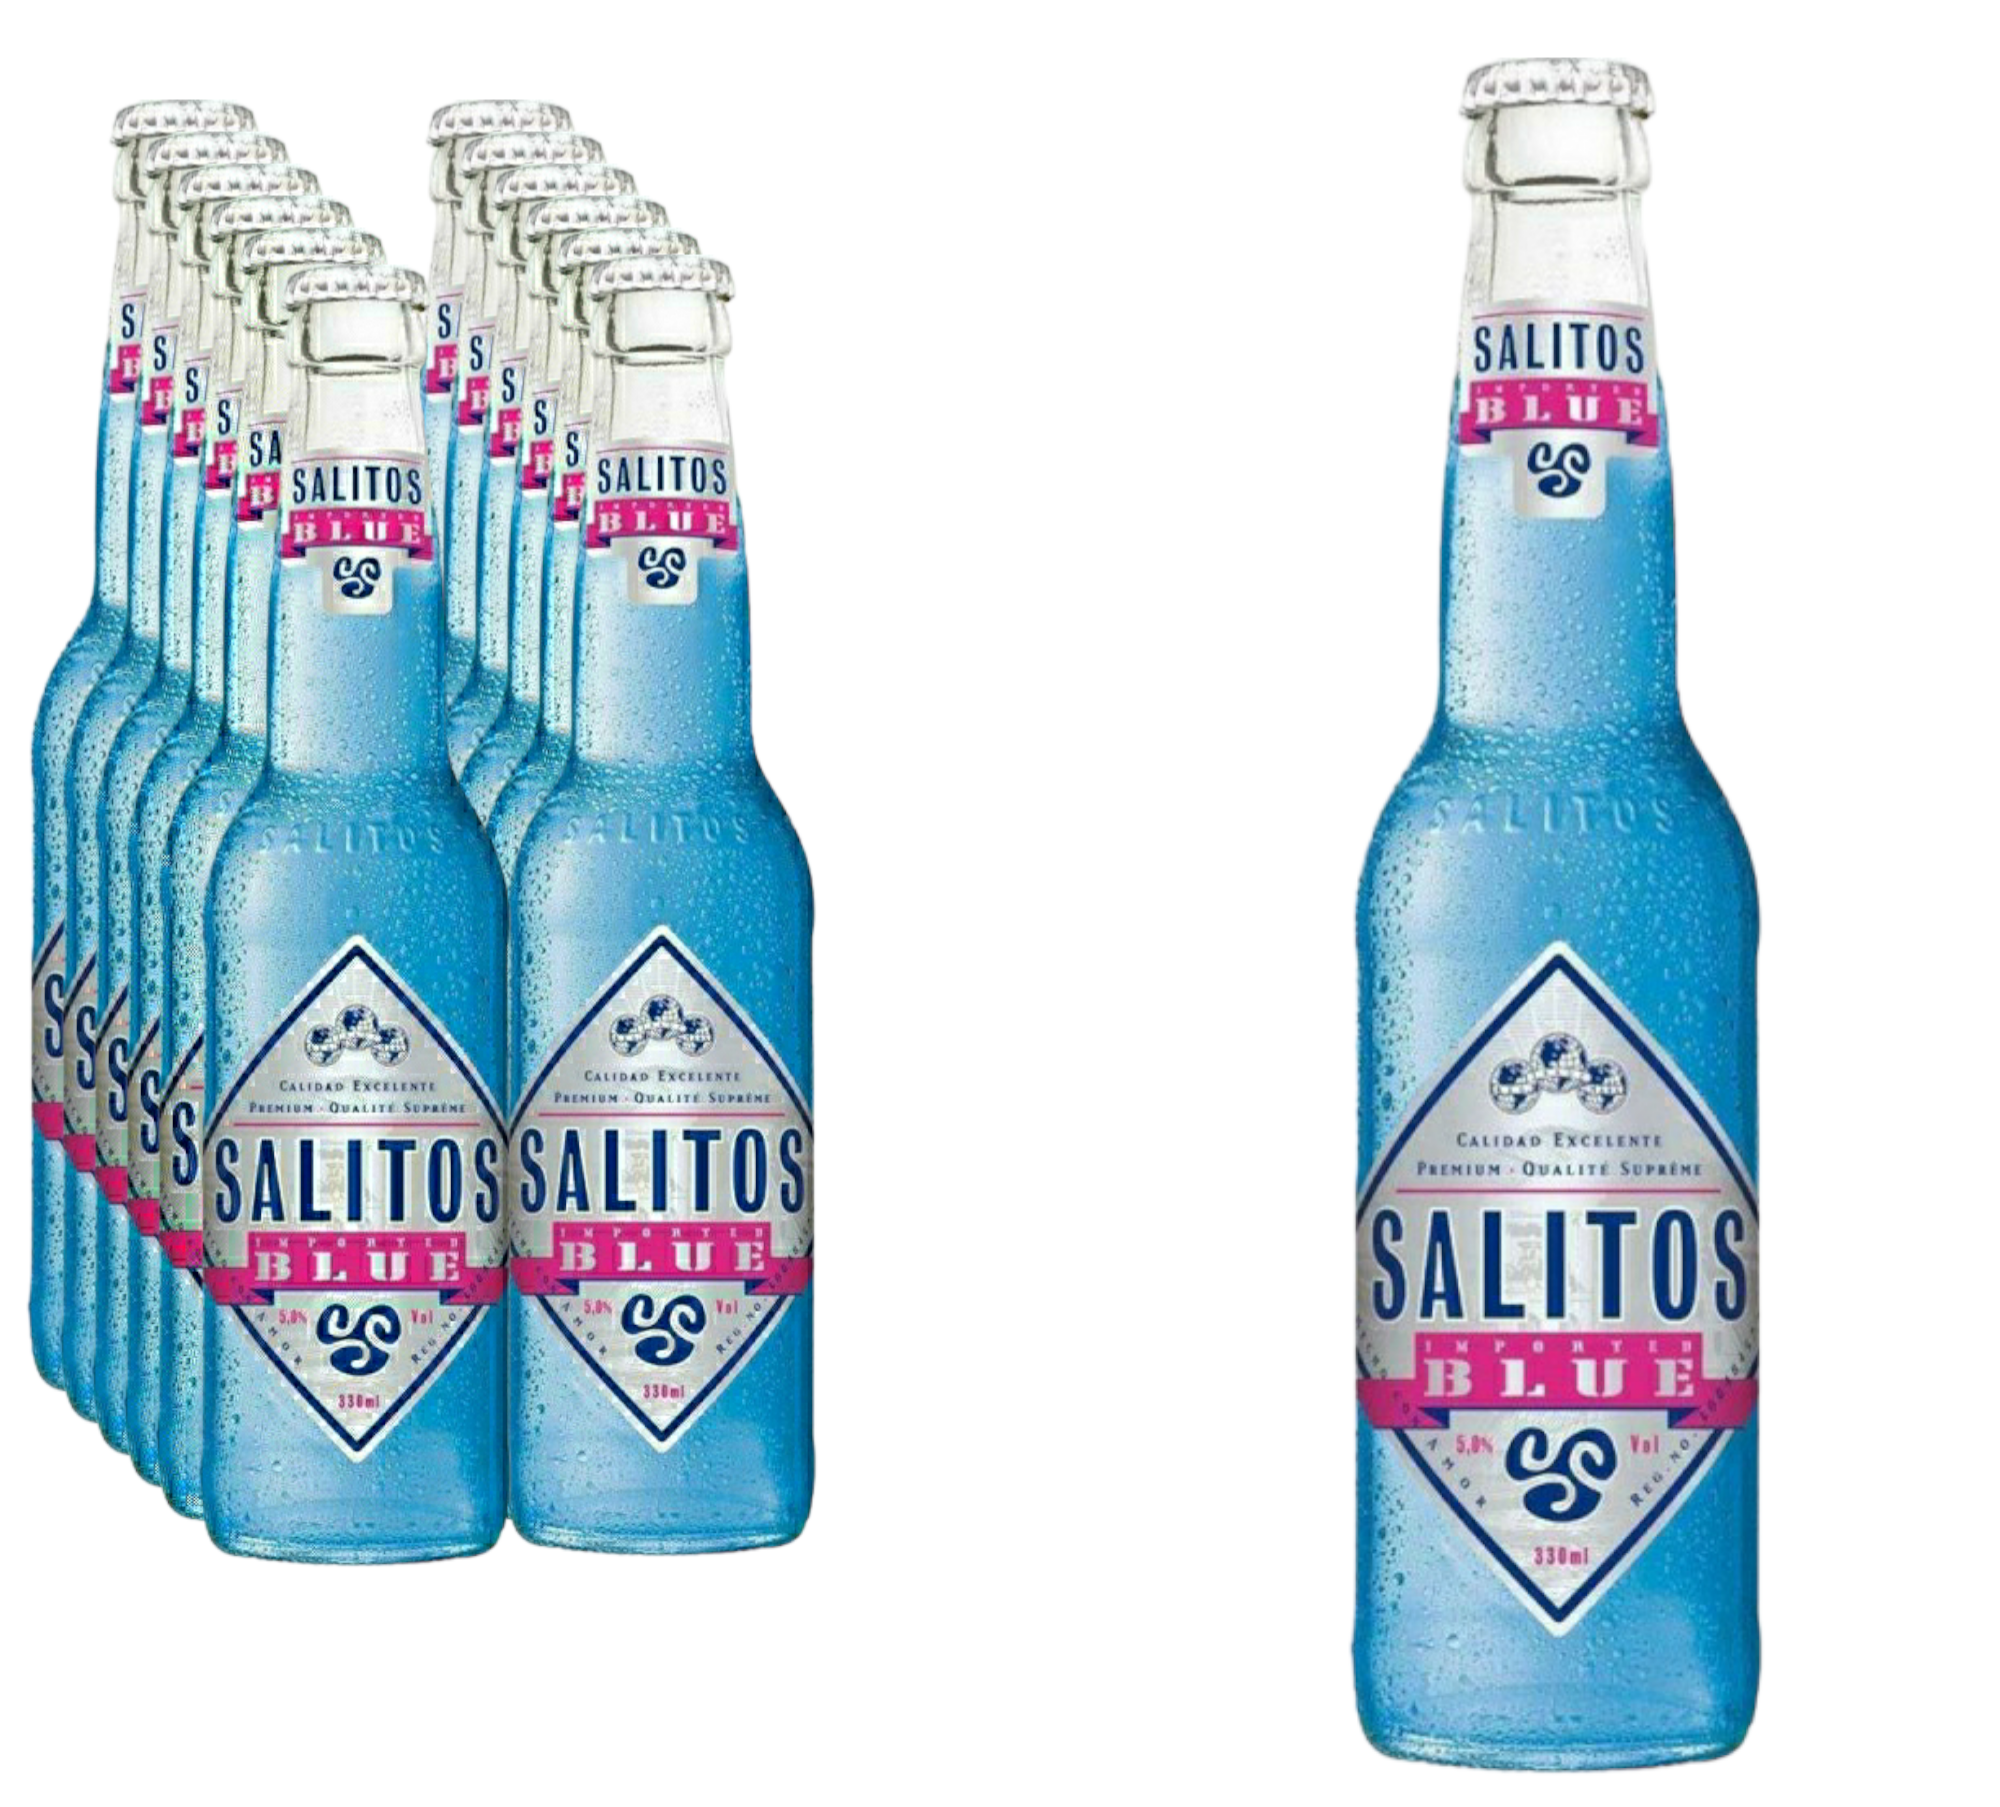 Salitos Blue 0,33l-  Das Original mit 5% Vol.